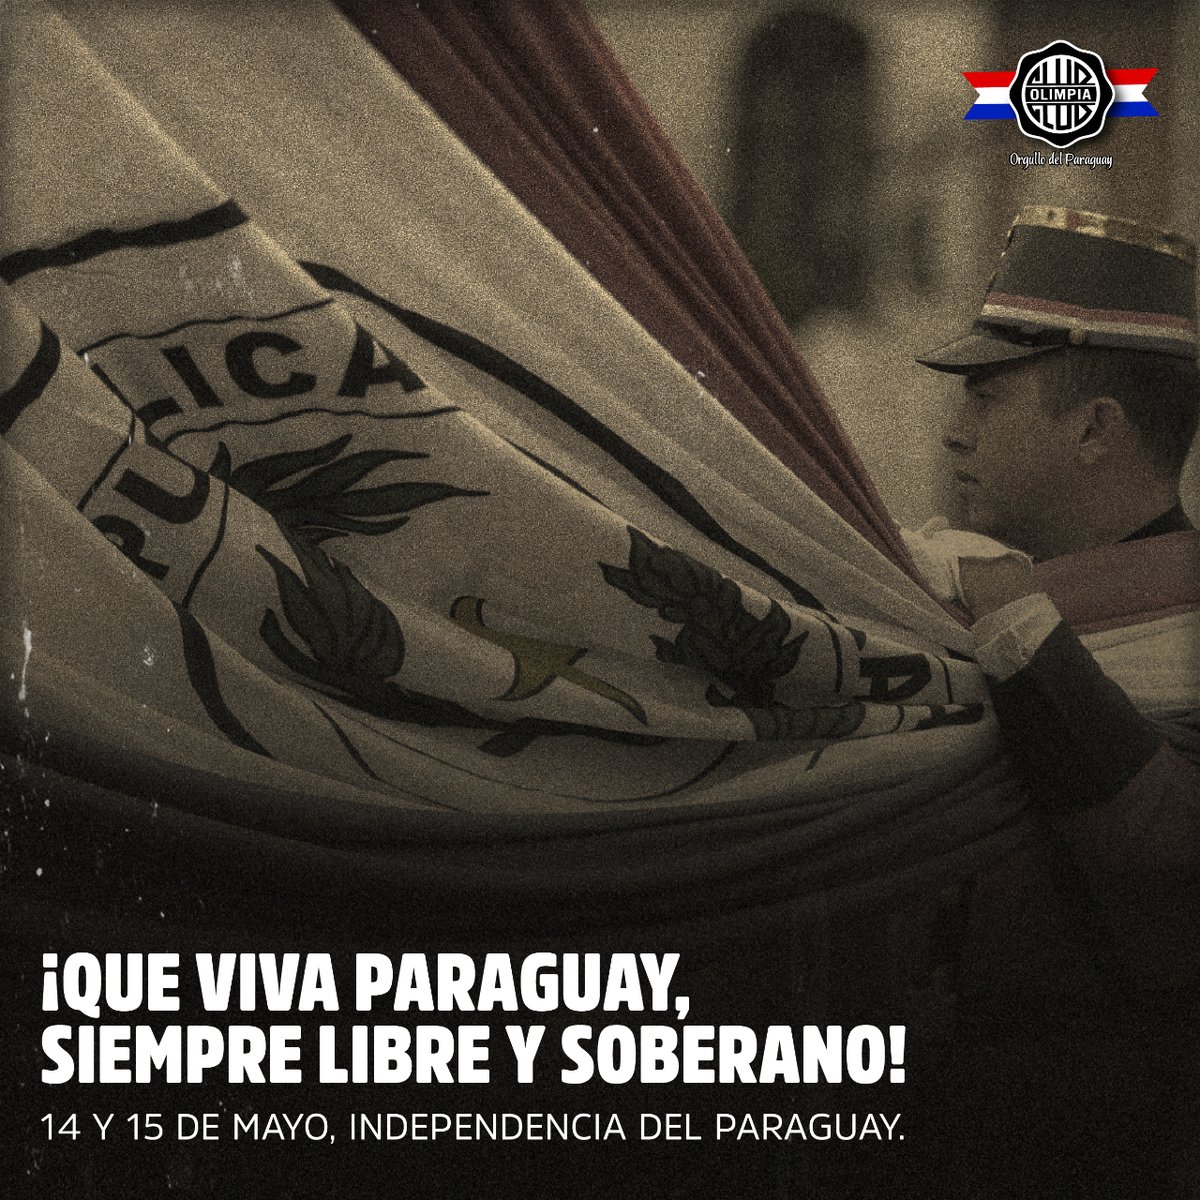 🖋 Orgullosos de representar a un país libre y soberano hace 213 años.

No paremos, a la Patria la seguimos construyendo día a día entre todos.

¡Que viva Paraguay! 🇵🇾

#DíaDeLaIndependencia ⚪️⚫️⚪️